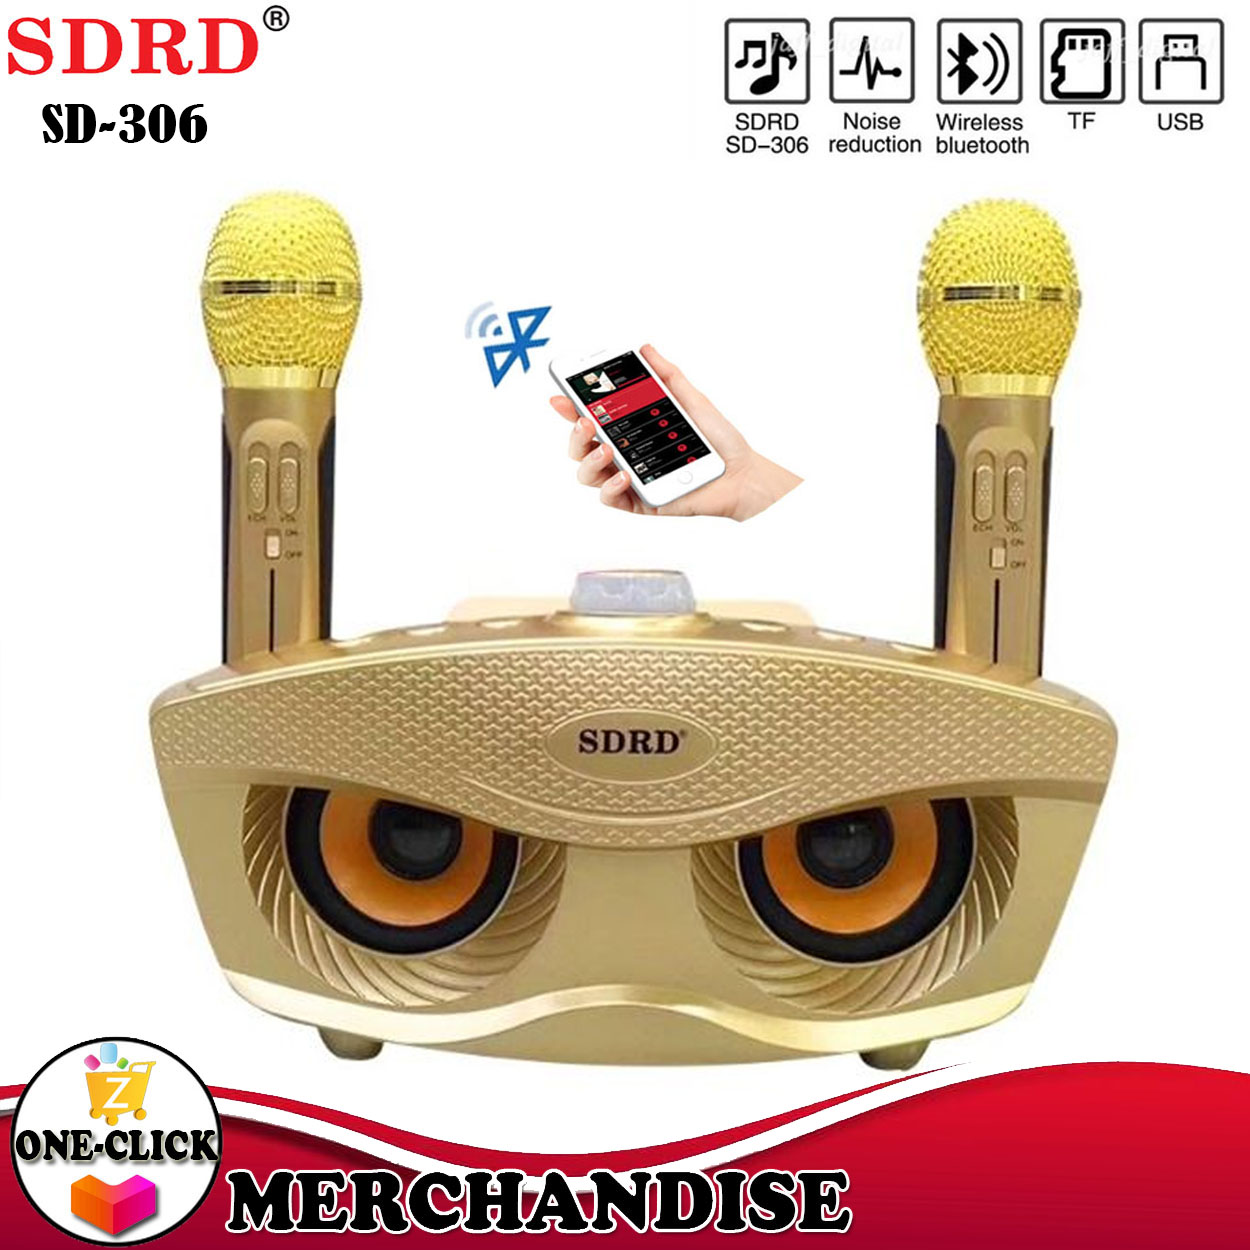 🔊 Parlante karaoke Bluetooth SDRD + 2 micrófonos SD-306